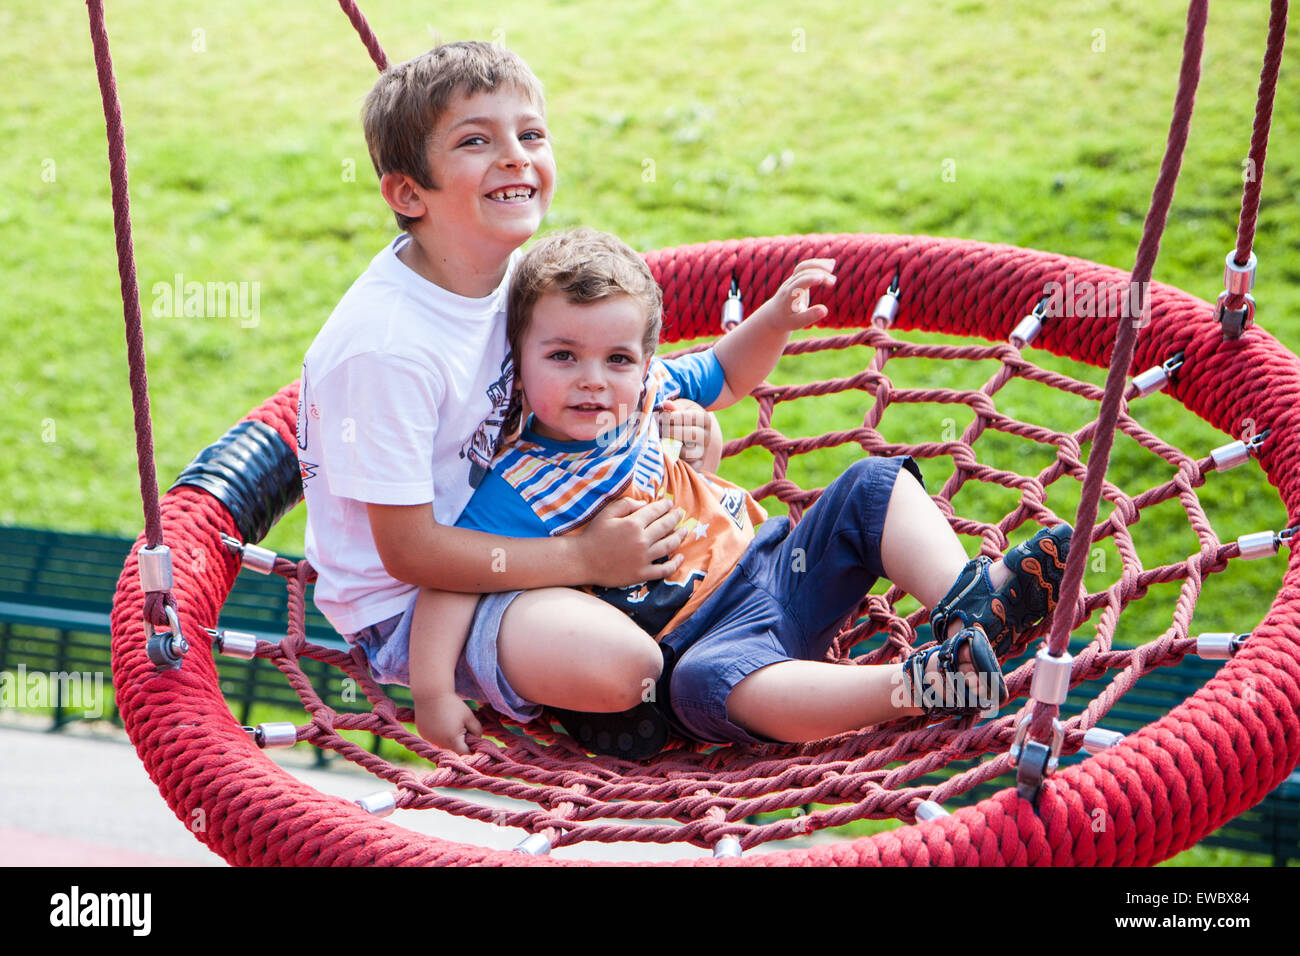 zwei Kinder auf dem Spielplatz Spaß am swing-Runde Stockfoto